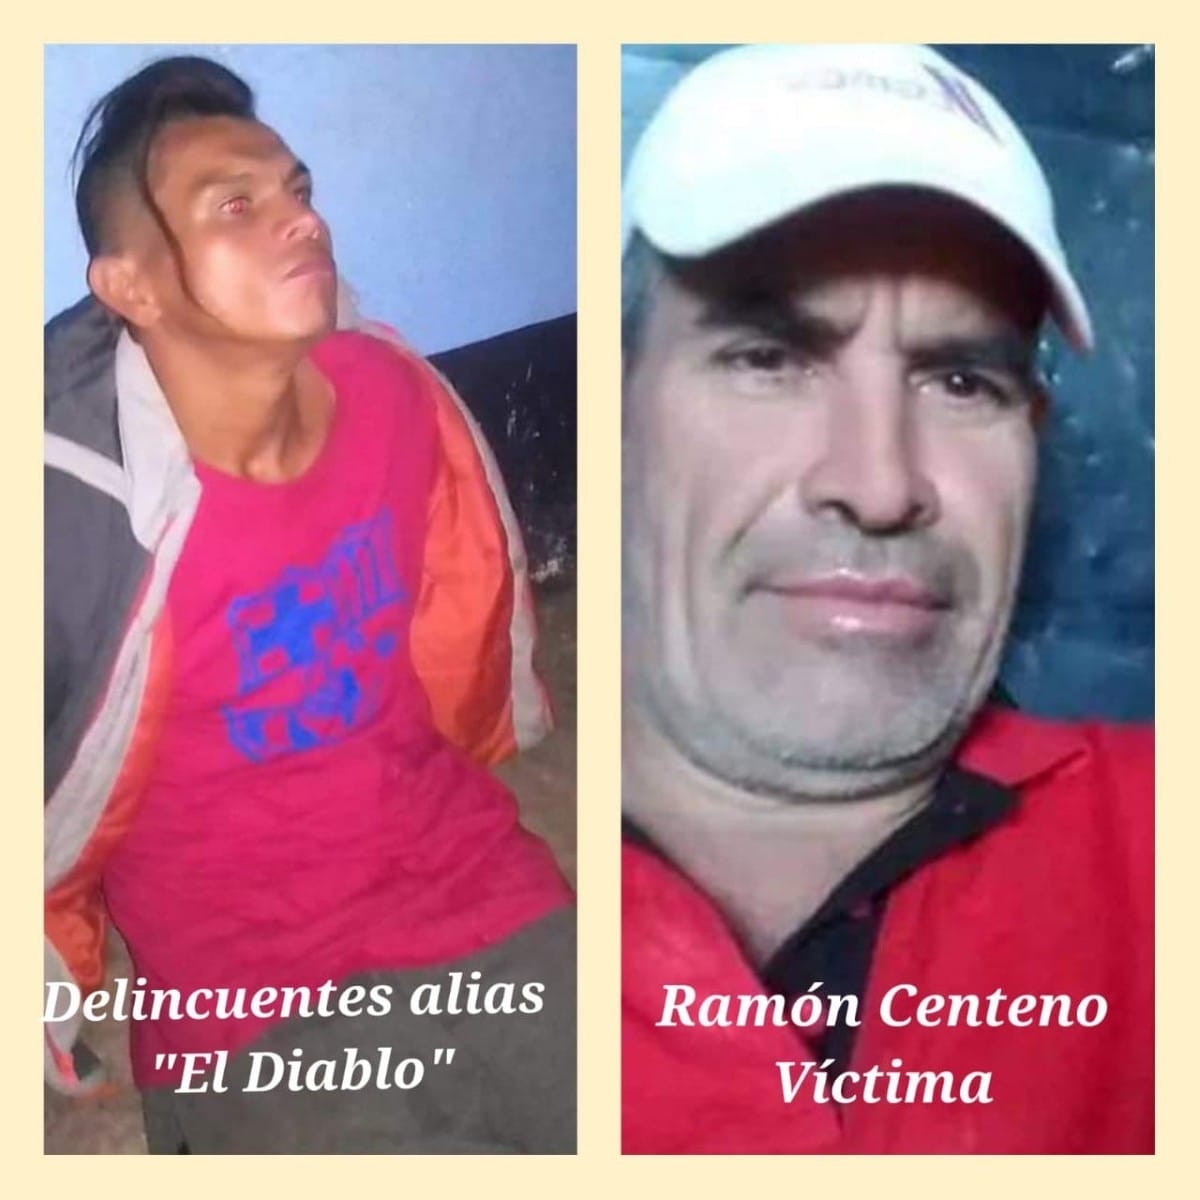 El asesino El Diablo (izquierda) mató a Ramón Centeno, de 51 años (derecha)